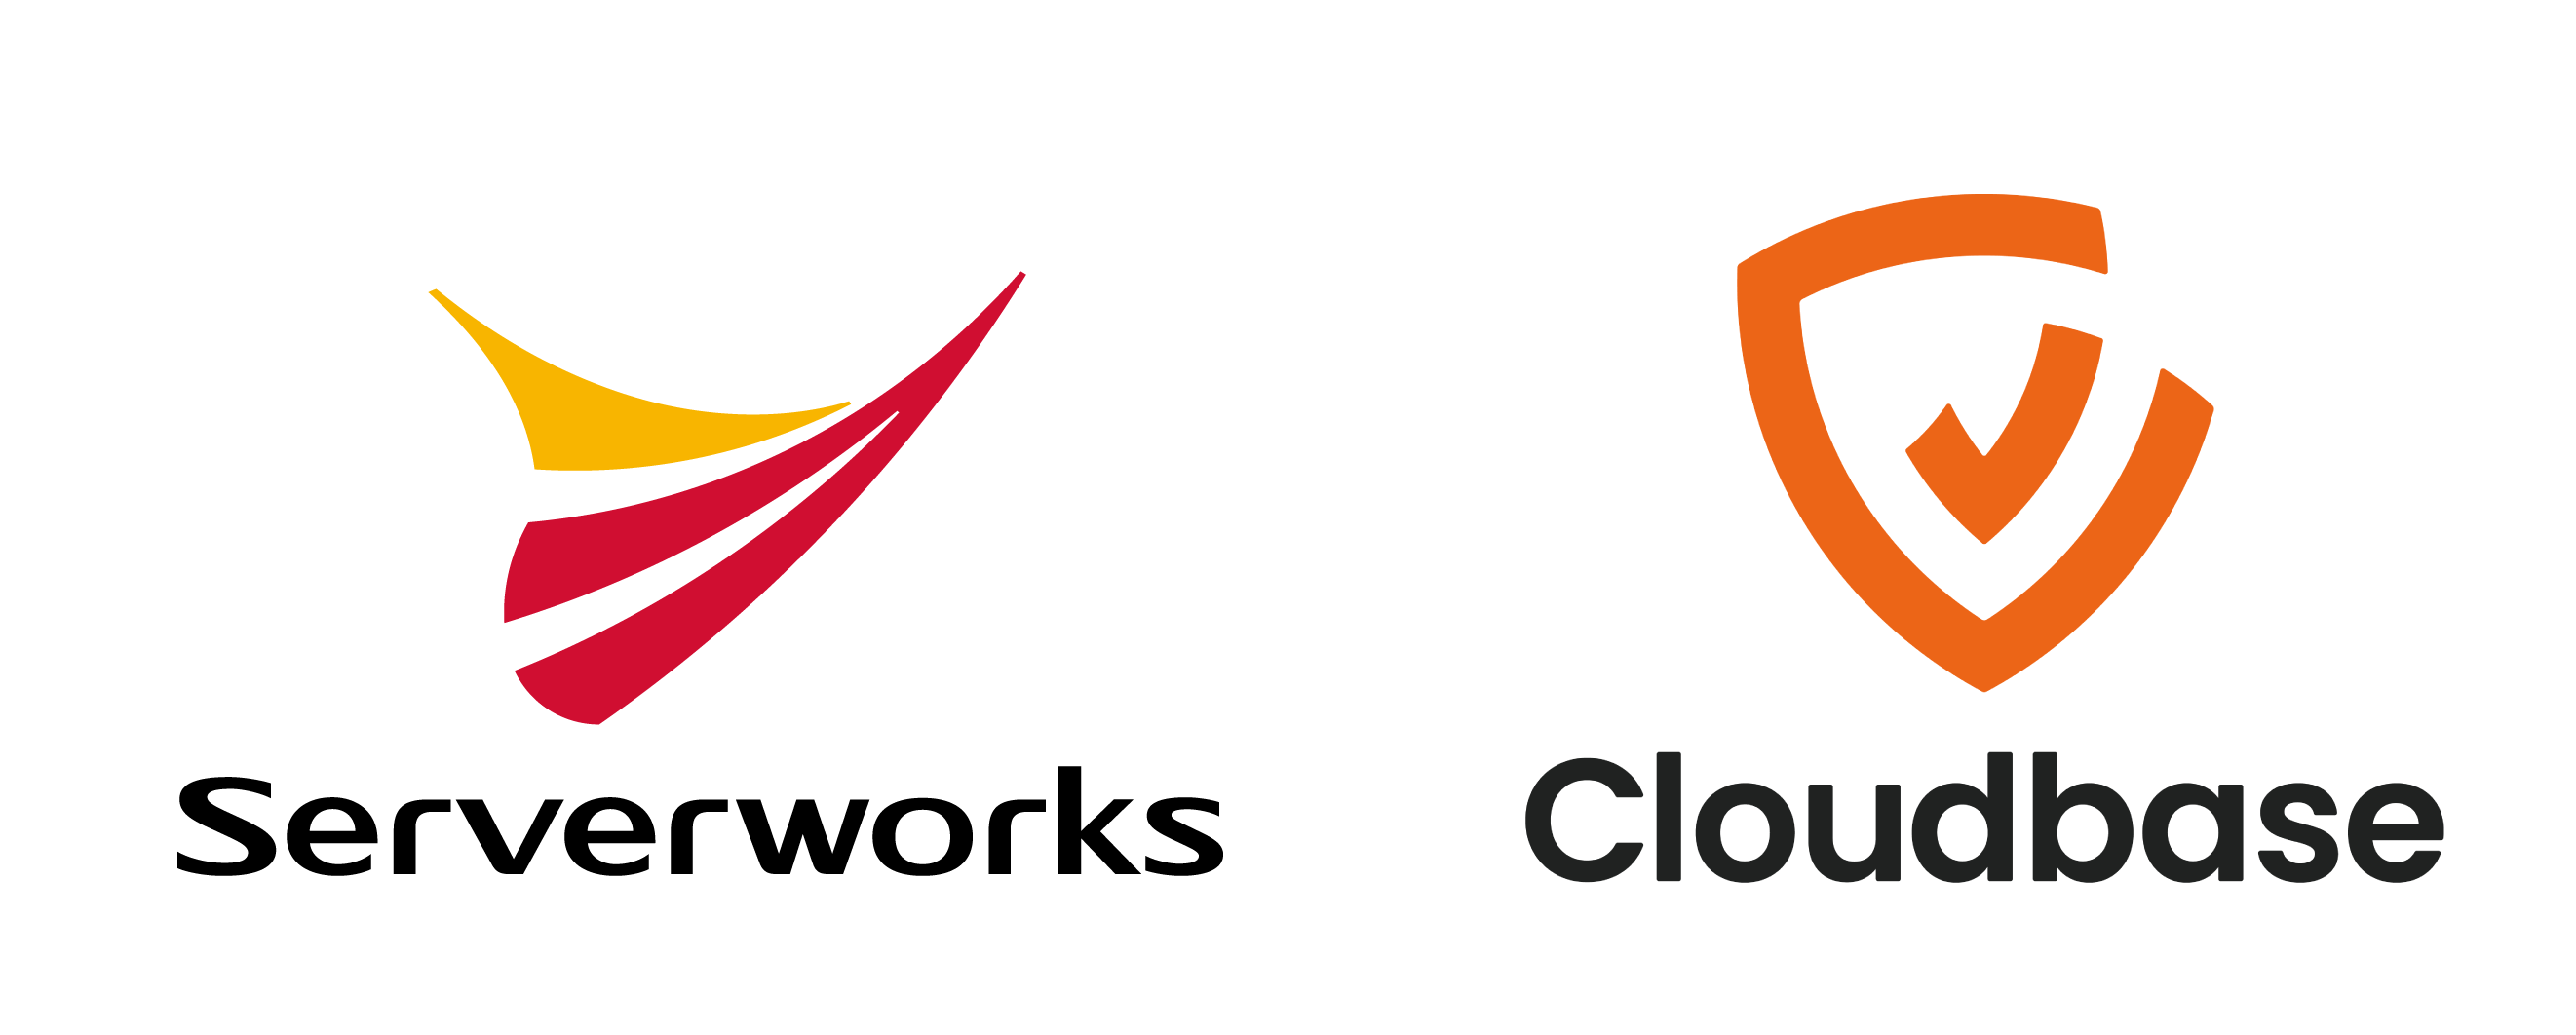 サーバーワークス、パブリッククラウドのセキュリティプラットフォームを提供するCloudbase株式会社に出資